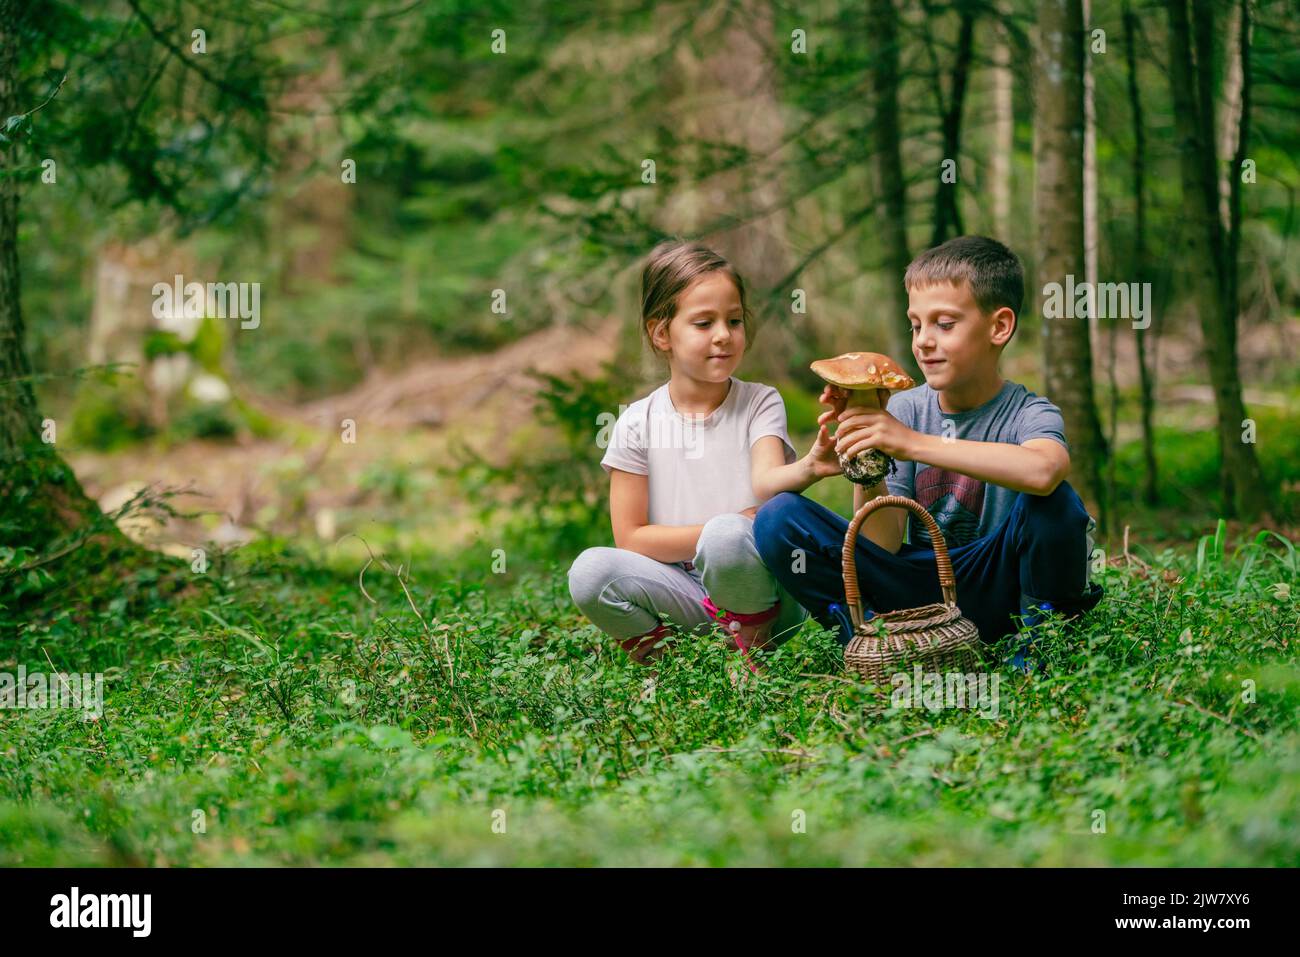 Una niña y un niño están sosteniendo un hongo boletus y sonriendo en el bosque Foto de stock